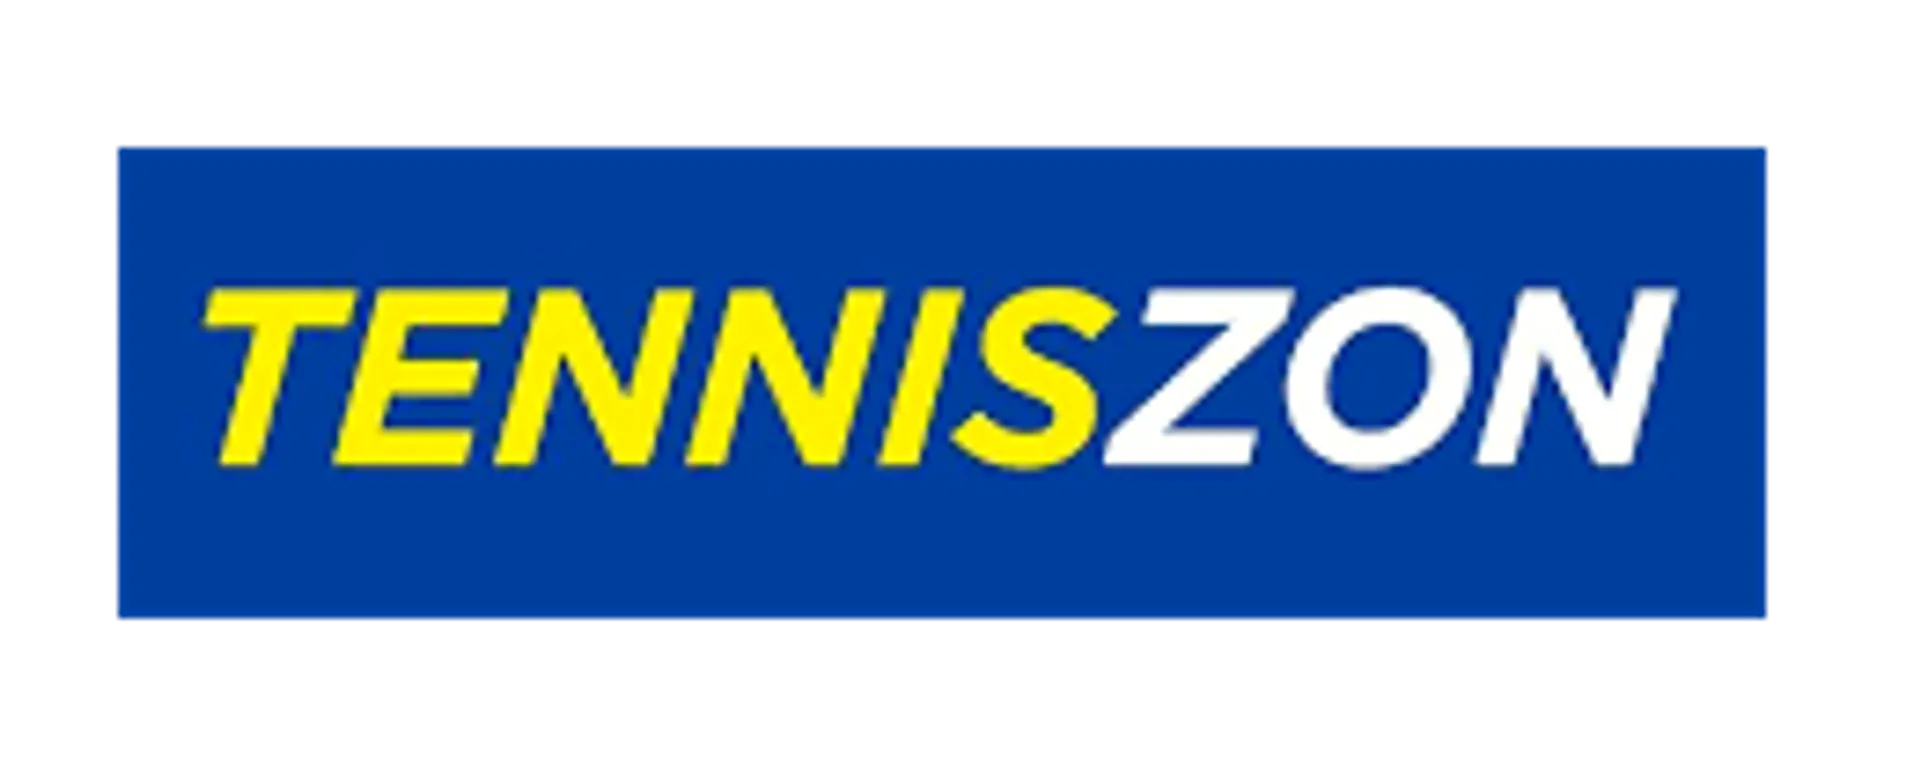 TENNISZON logo de circulaires